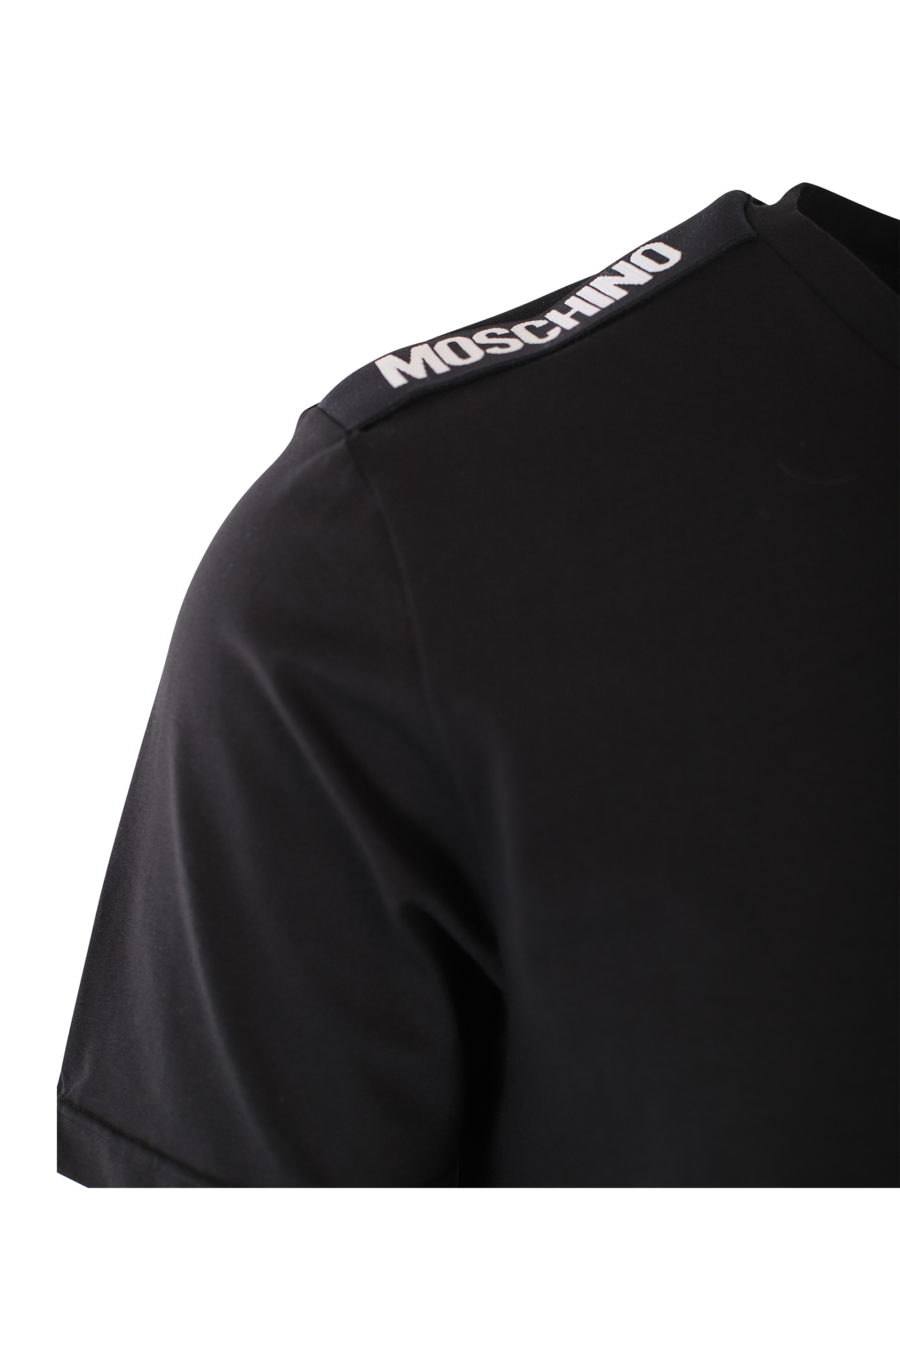 Camiseta negra con logo blanco en cinta en hombros - IMG 2434